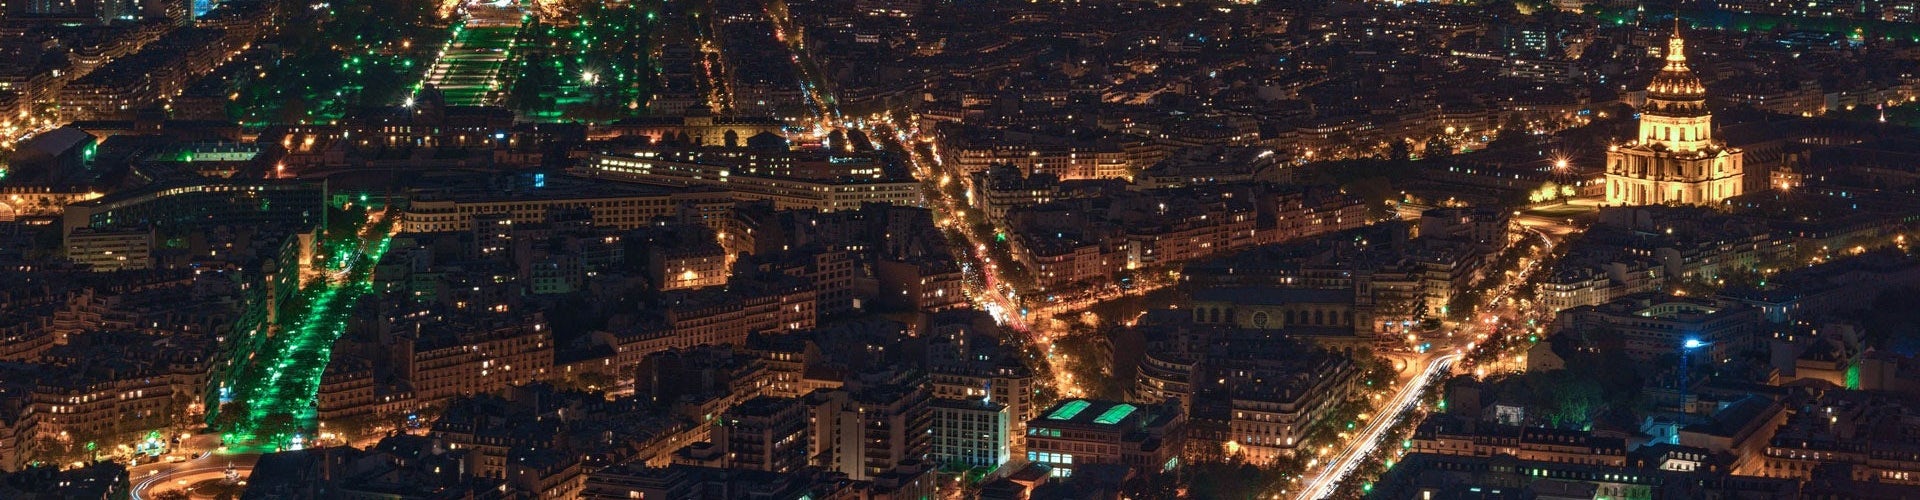 Tour Paris De Noche 2020